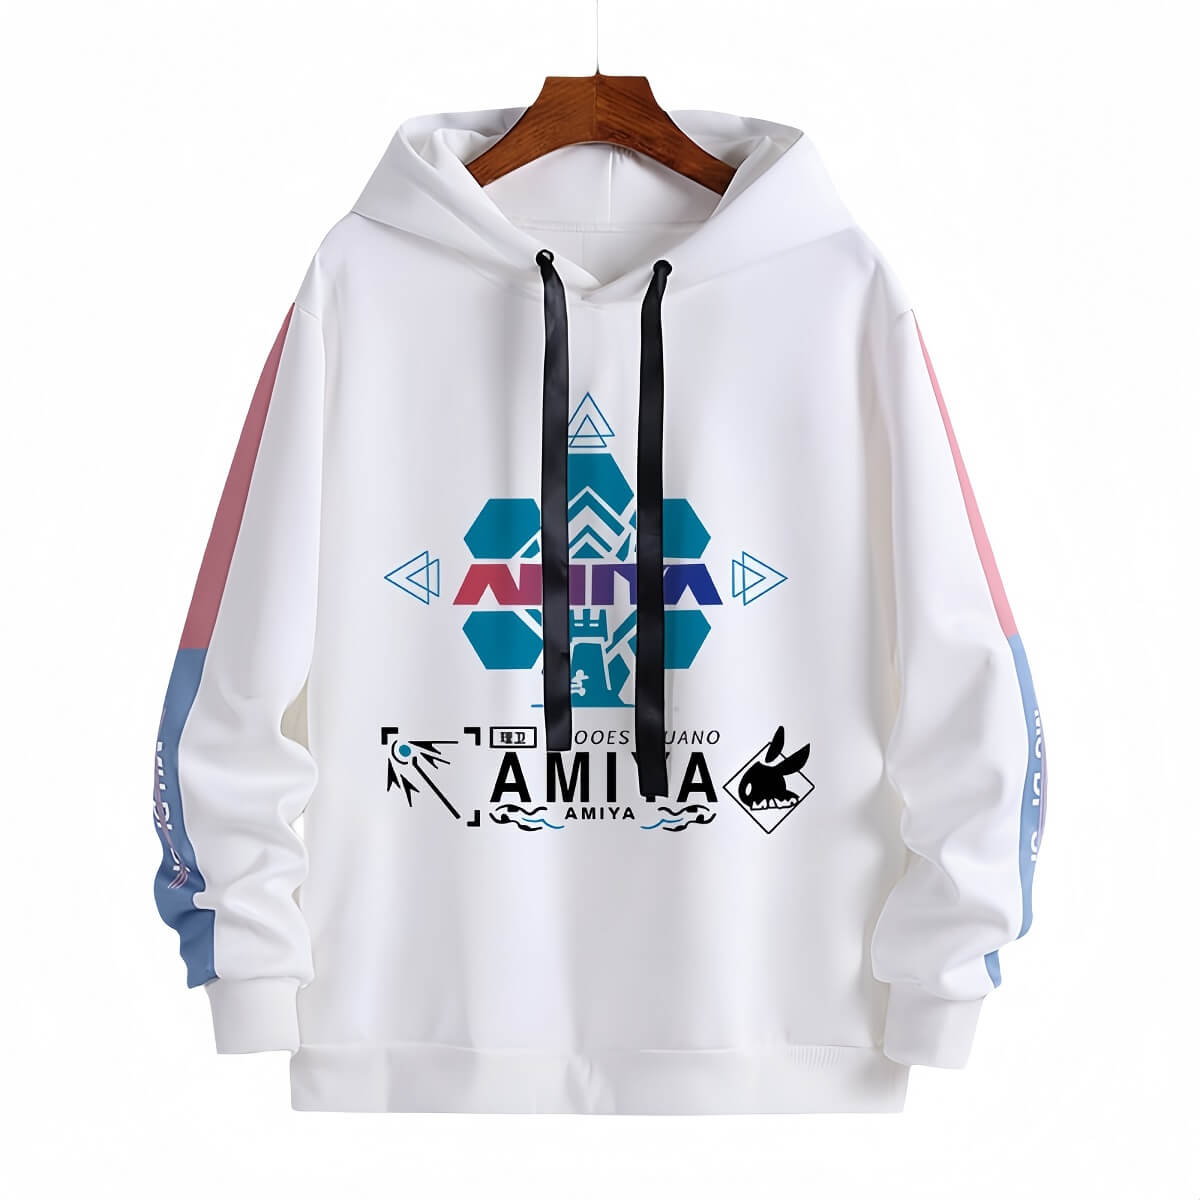 Arknights Amiya character style hooded sweatshirt